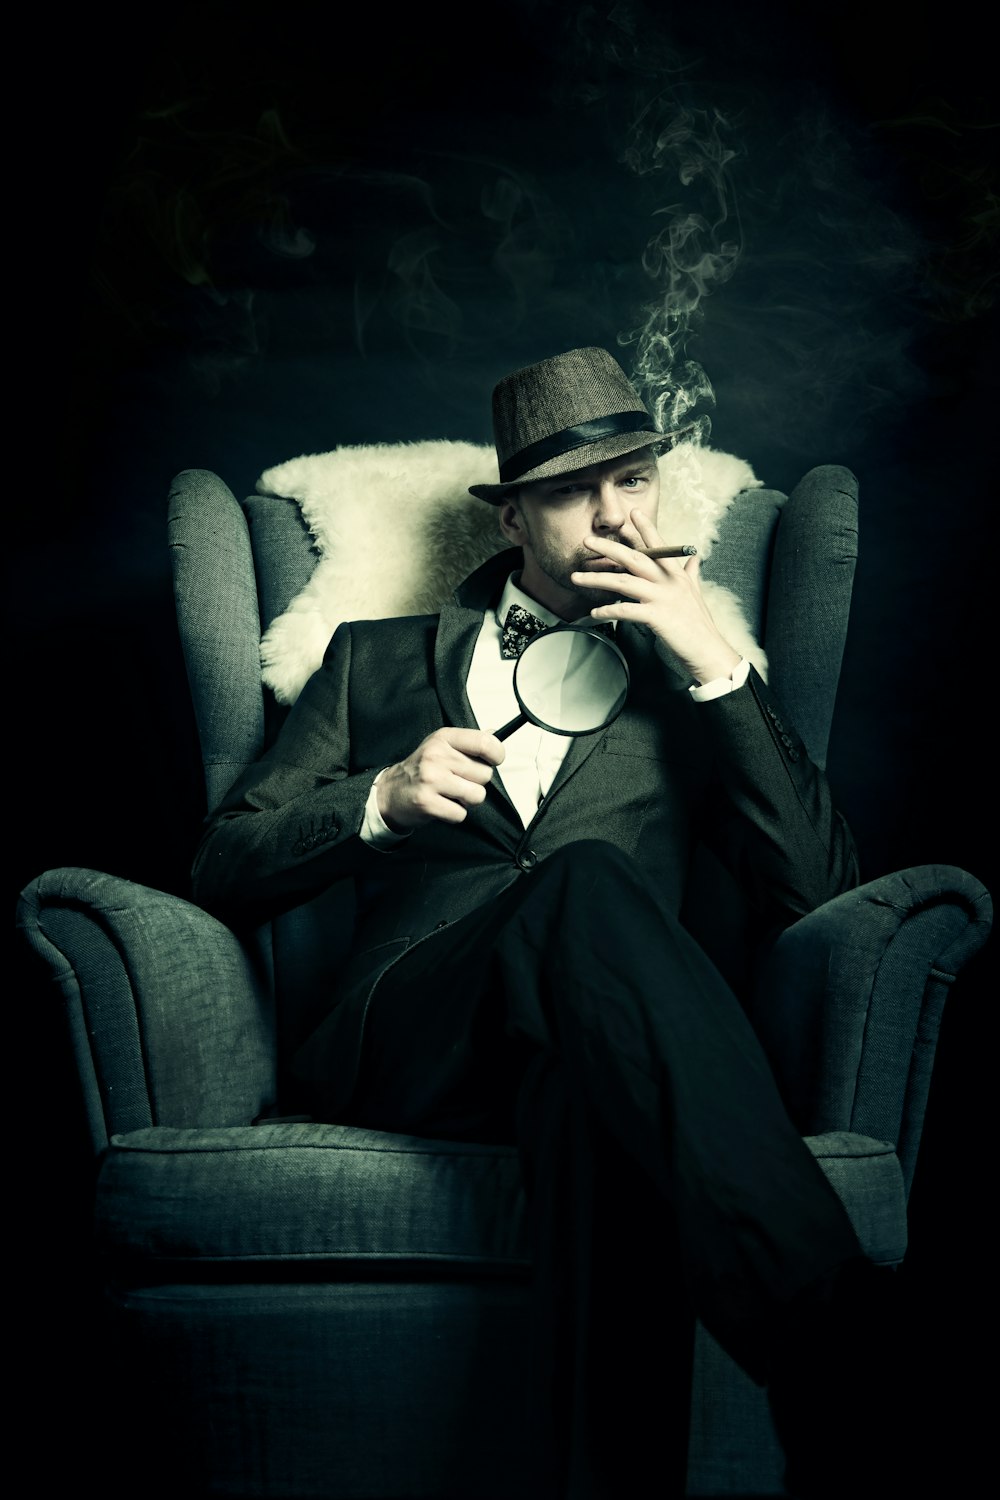 Ein Mann sitzt auf einem Stuhl und raucht eine Zigarette